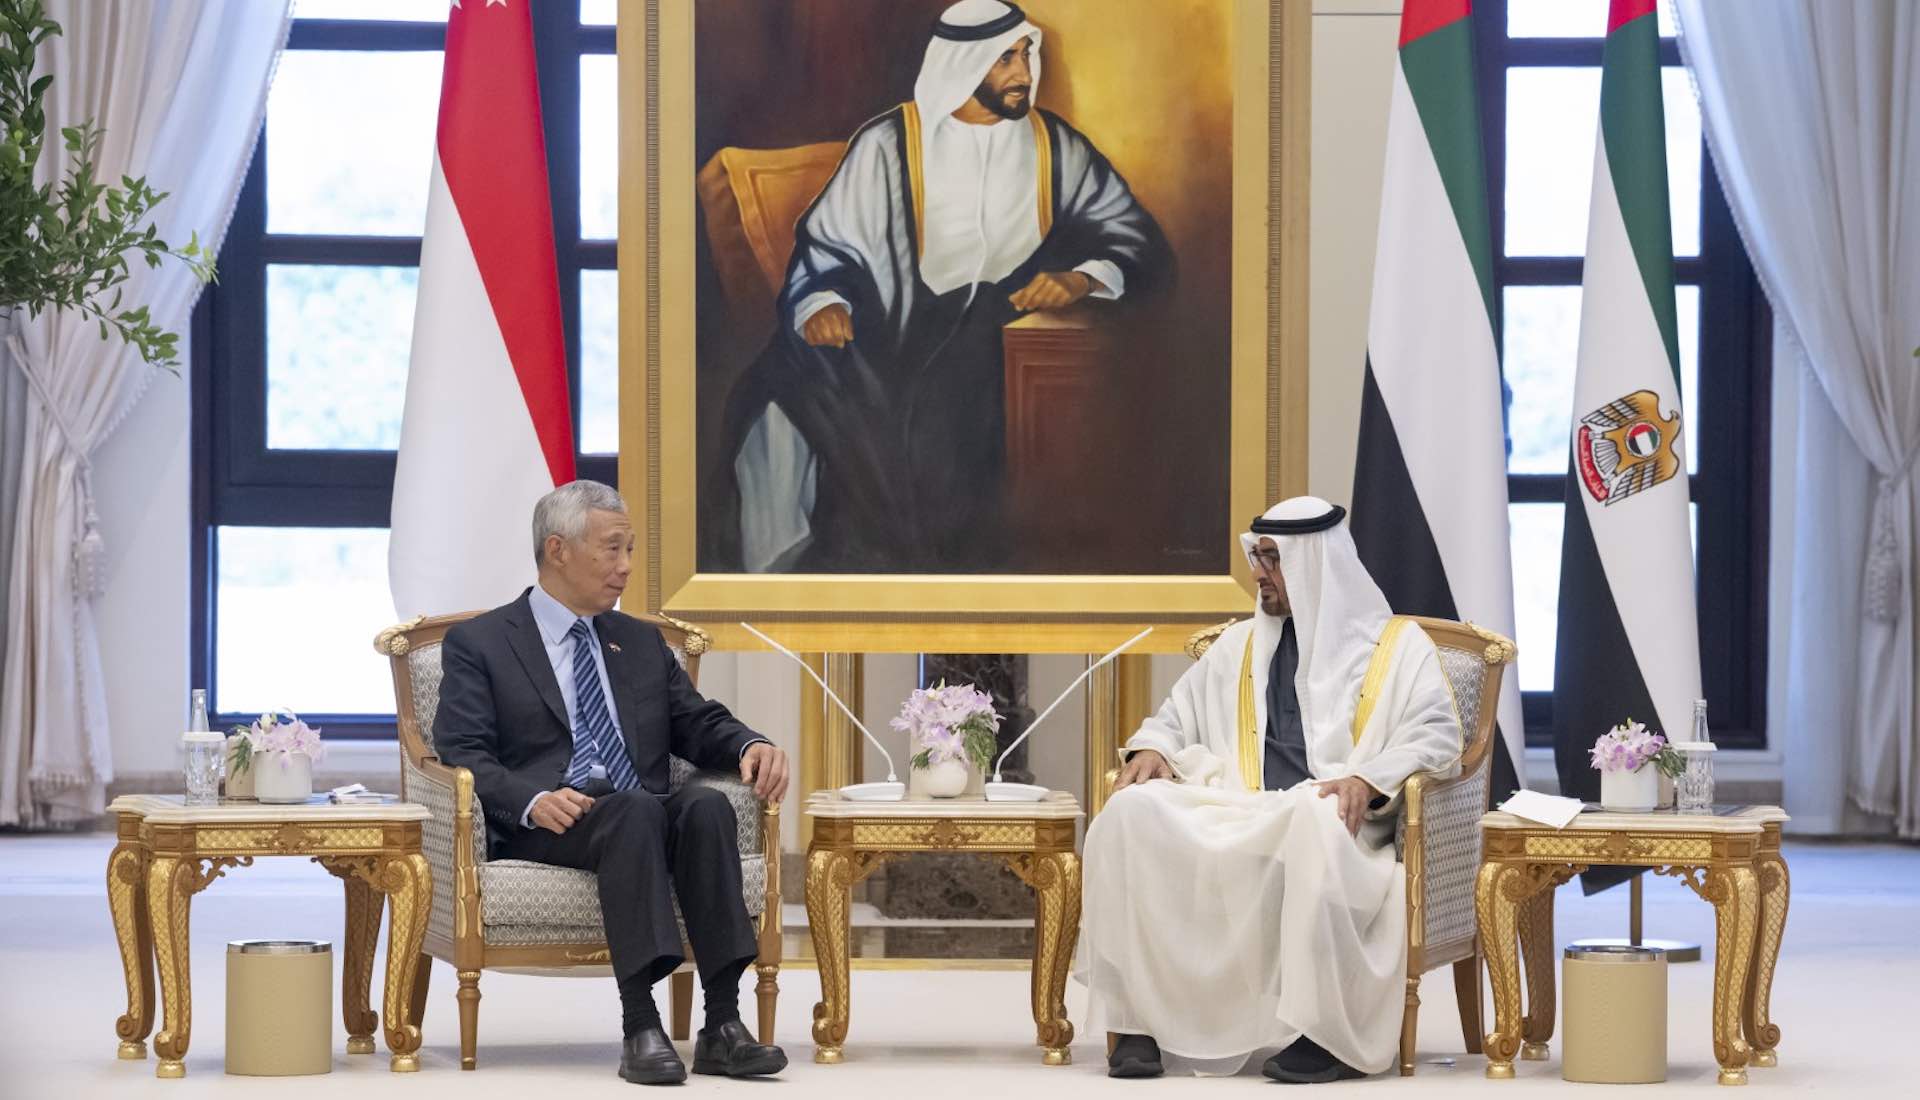 प्रमुख राजनयिक बैठक में संयुक्त अरब अमीरात और सिंगापुर ने संबंधों को मजबूत किया